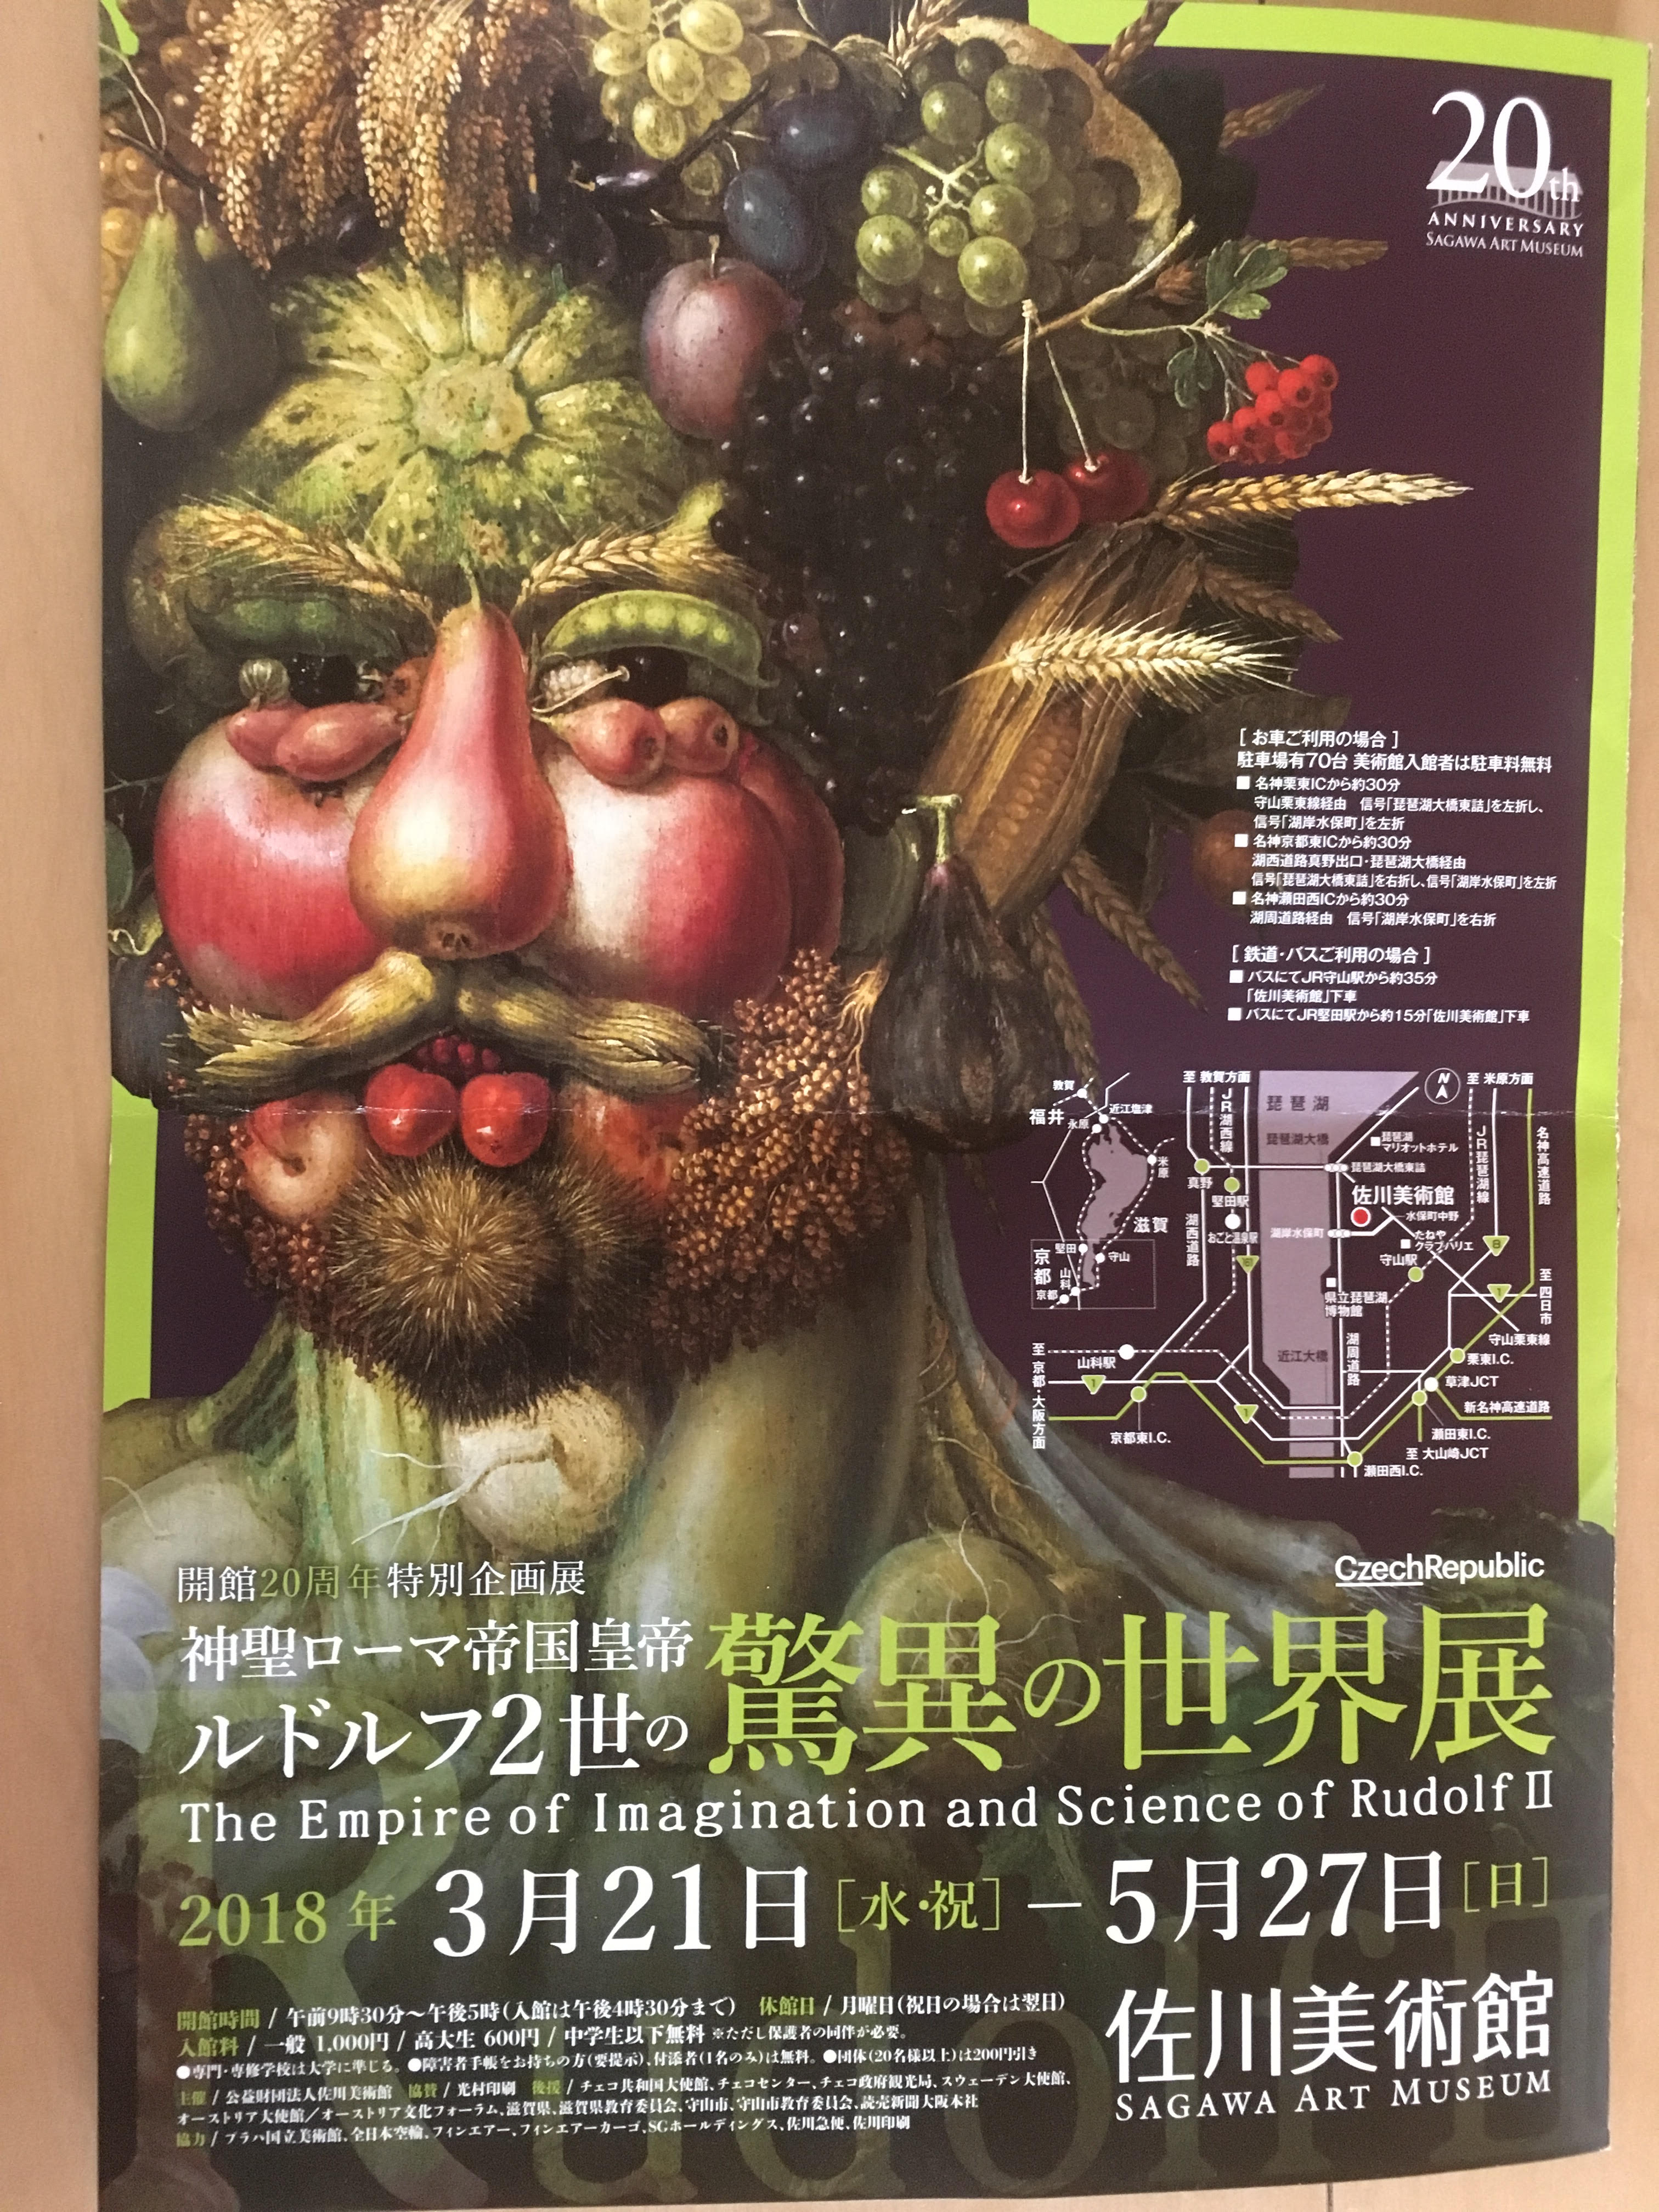 野菜で作ったお顔はどんなの？3月21日より佐川美術館で”ルドルフ2世の驚異の世界展”始まる♪